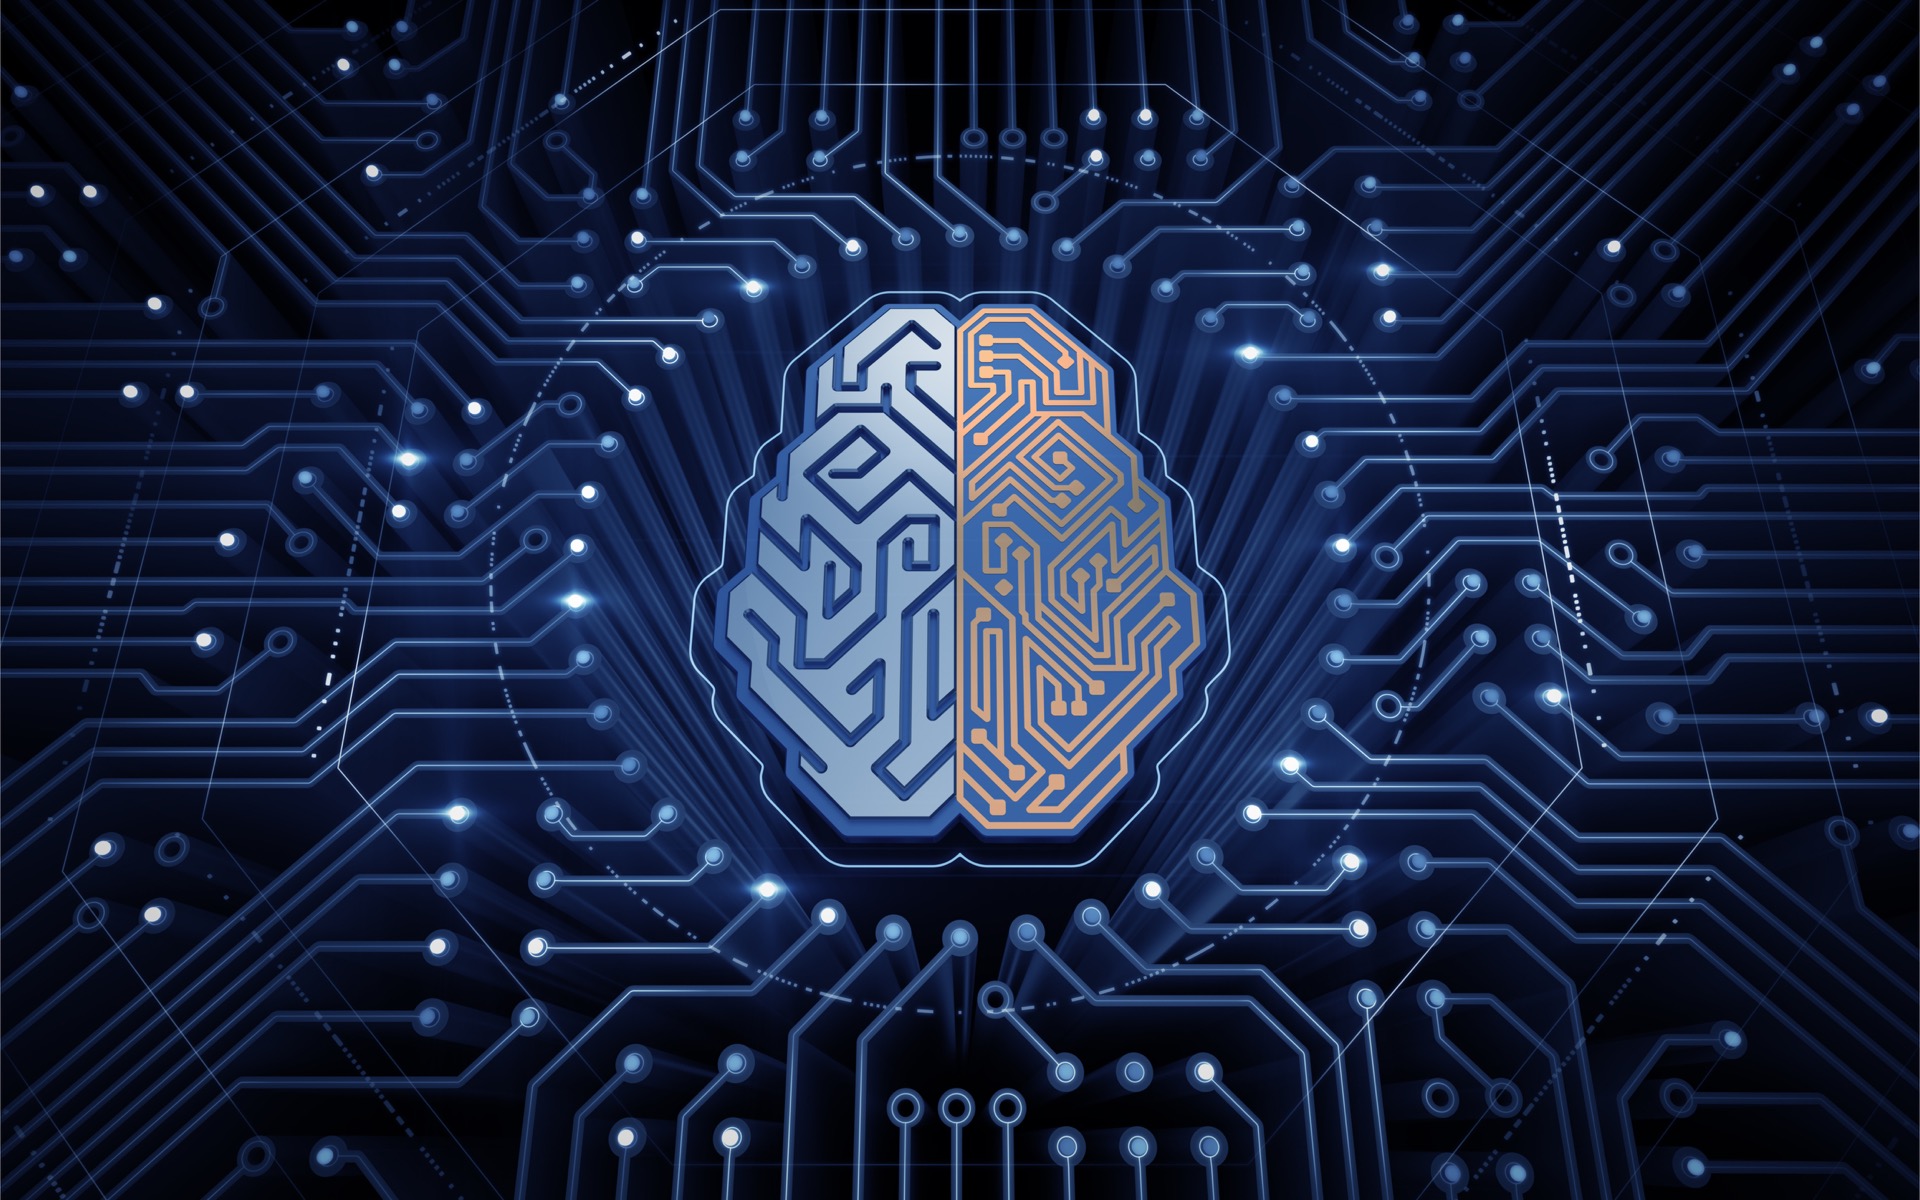 La Commission européenne publie un projet de règlement sur l’intelligence artificielle